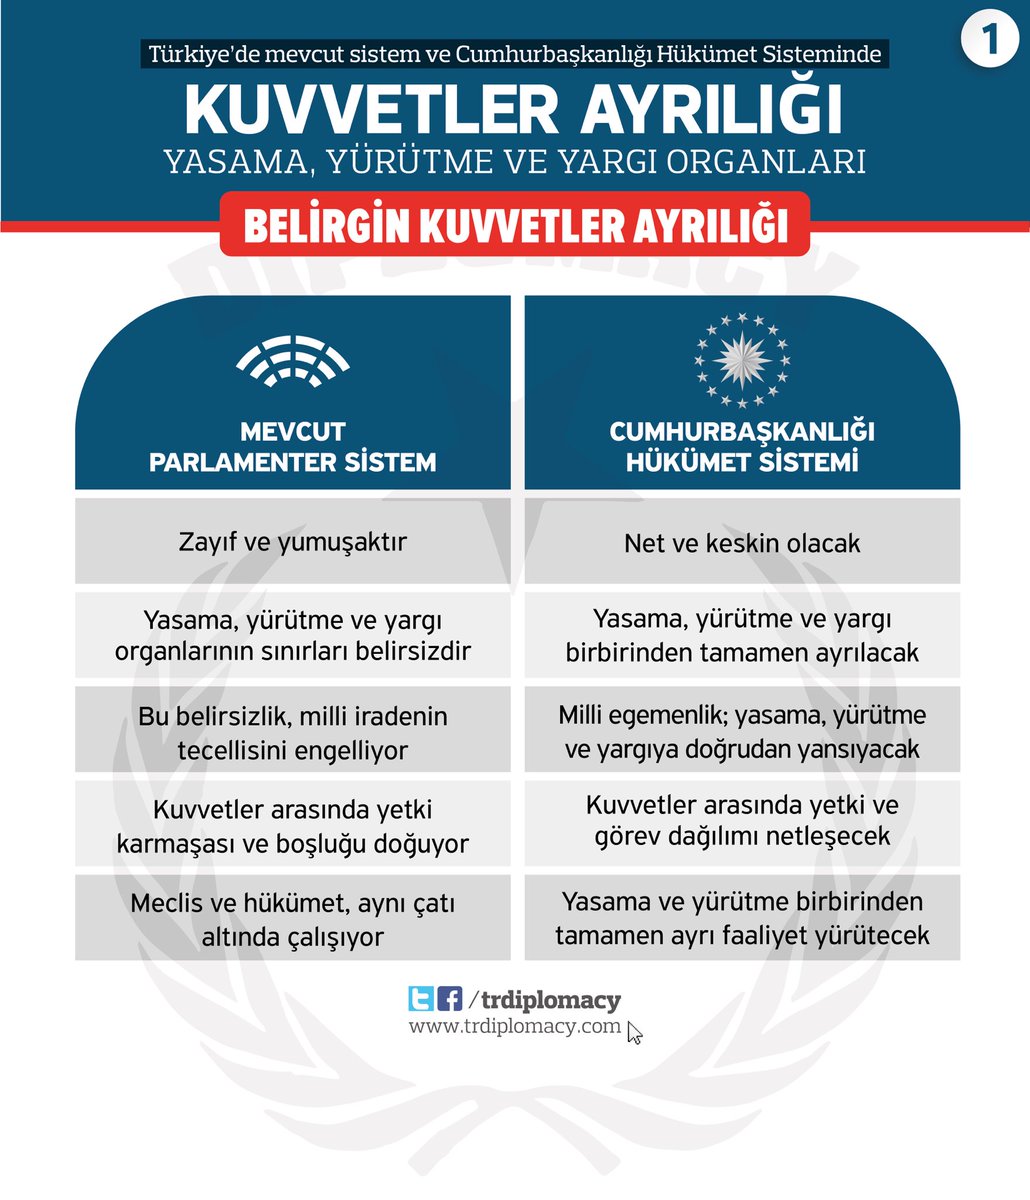 Türkiye'de Mevcut Sistem ve Cumhurbaşkanlığı Hükümet Sisteminde Kuvvetler Ayrılığı